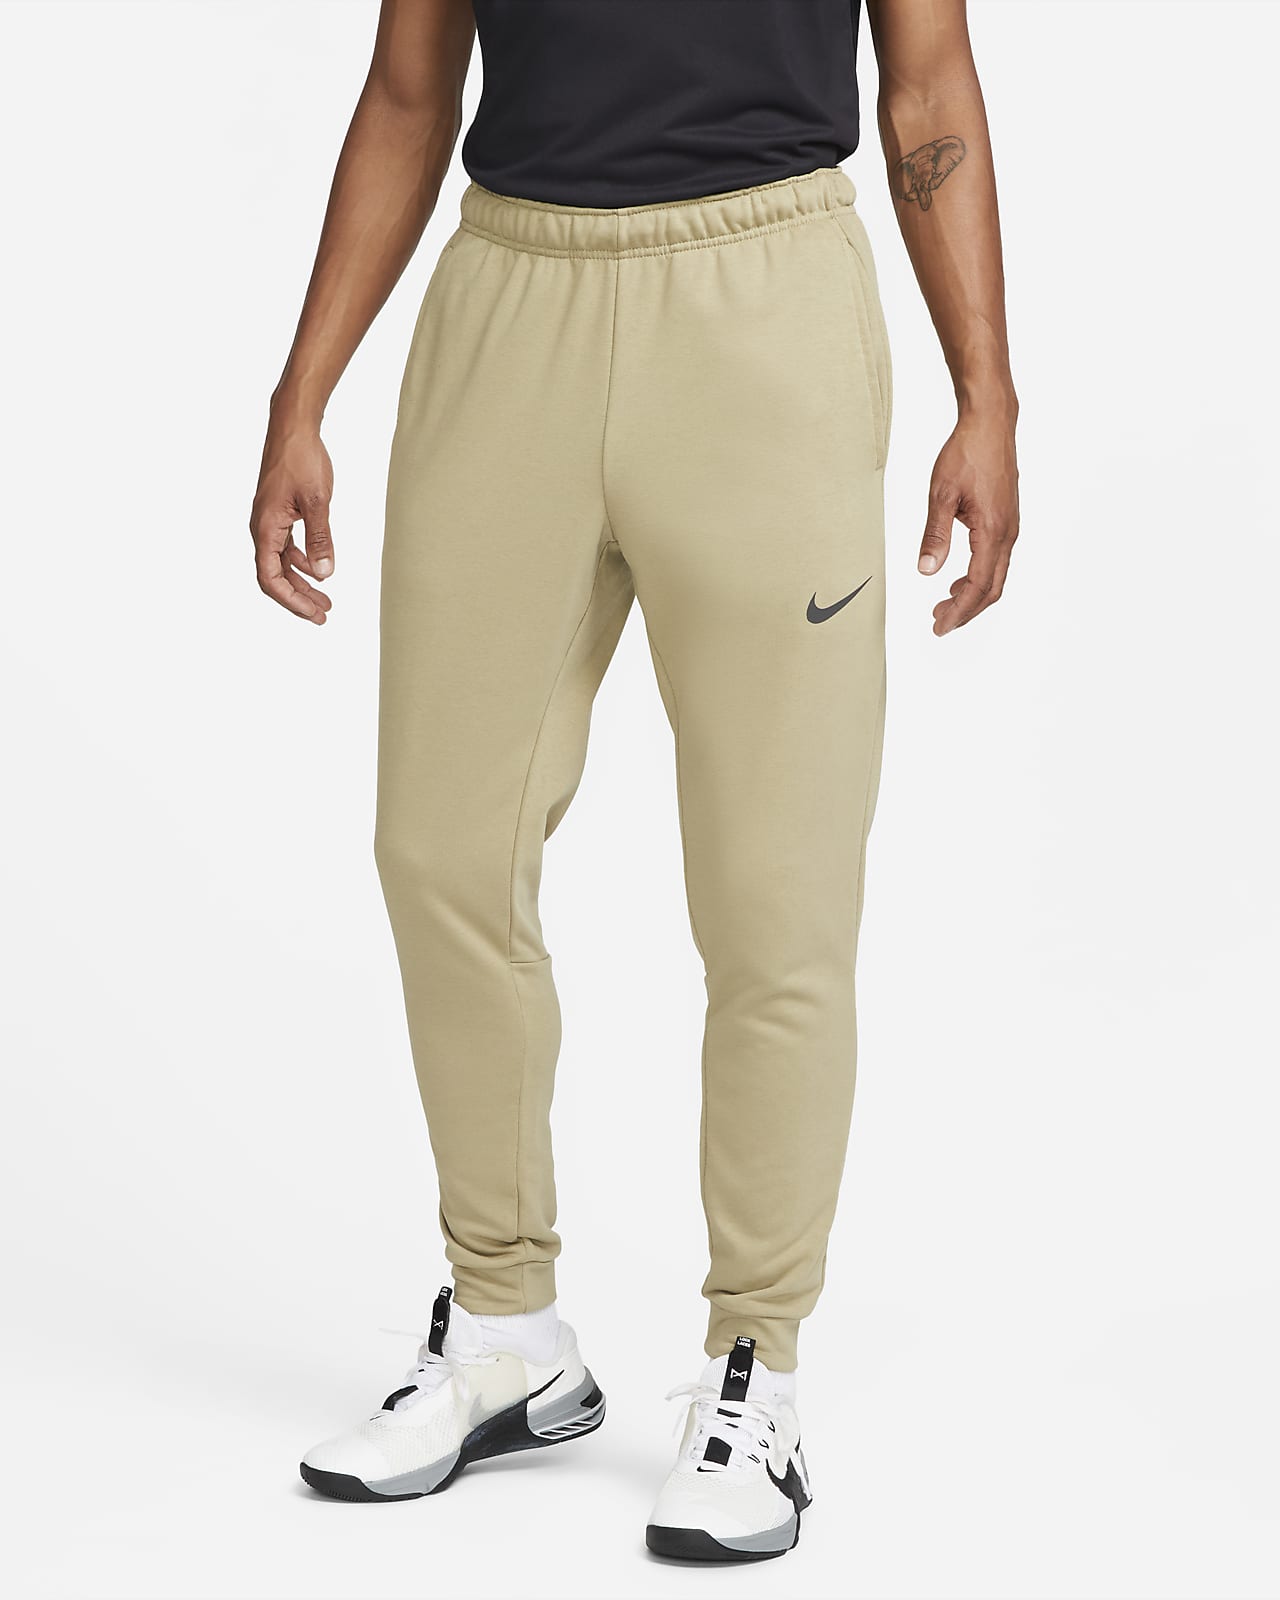 Męskie zwężane spodnie do fitnessu z dzianiny Dri-FIT Nike Dry